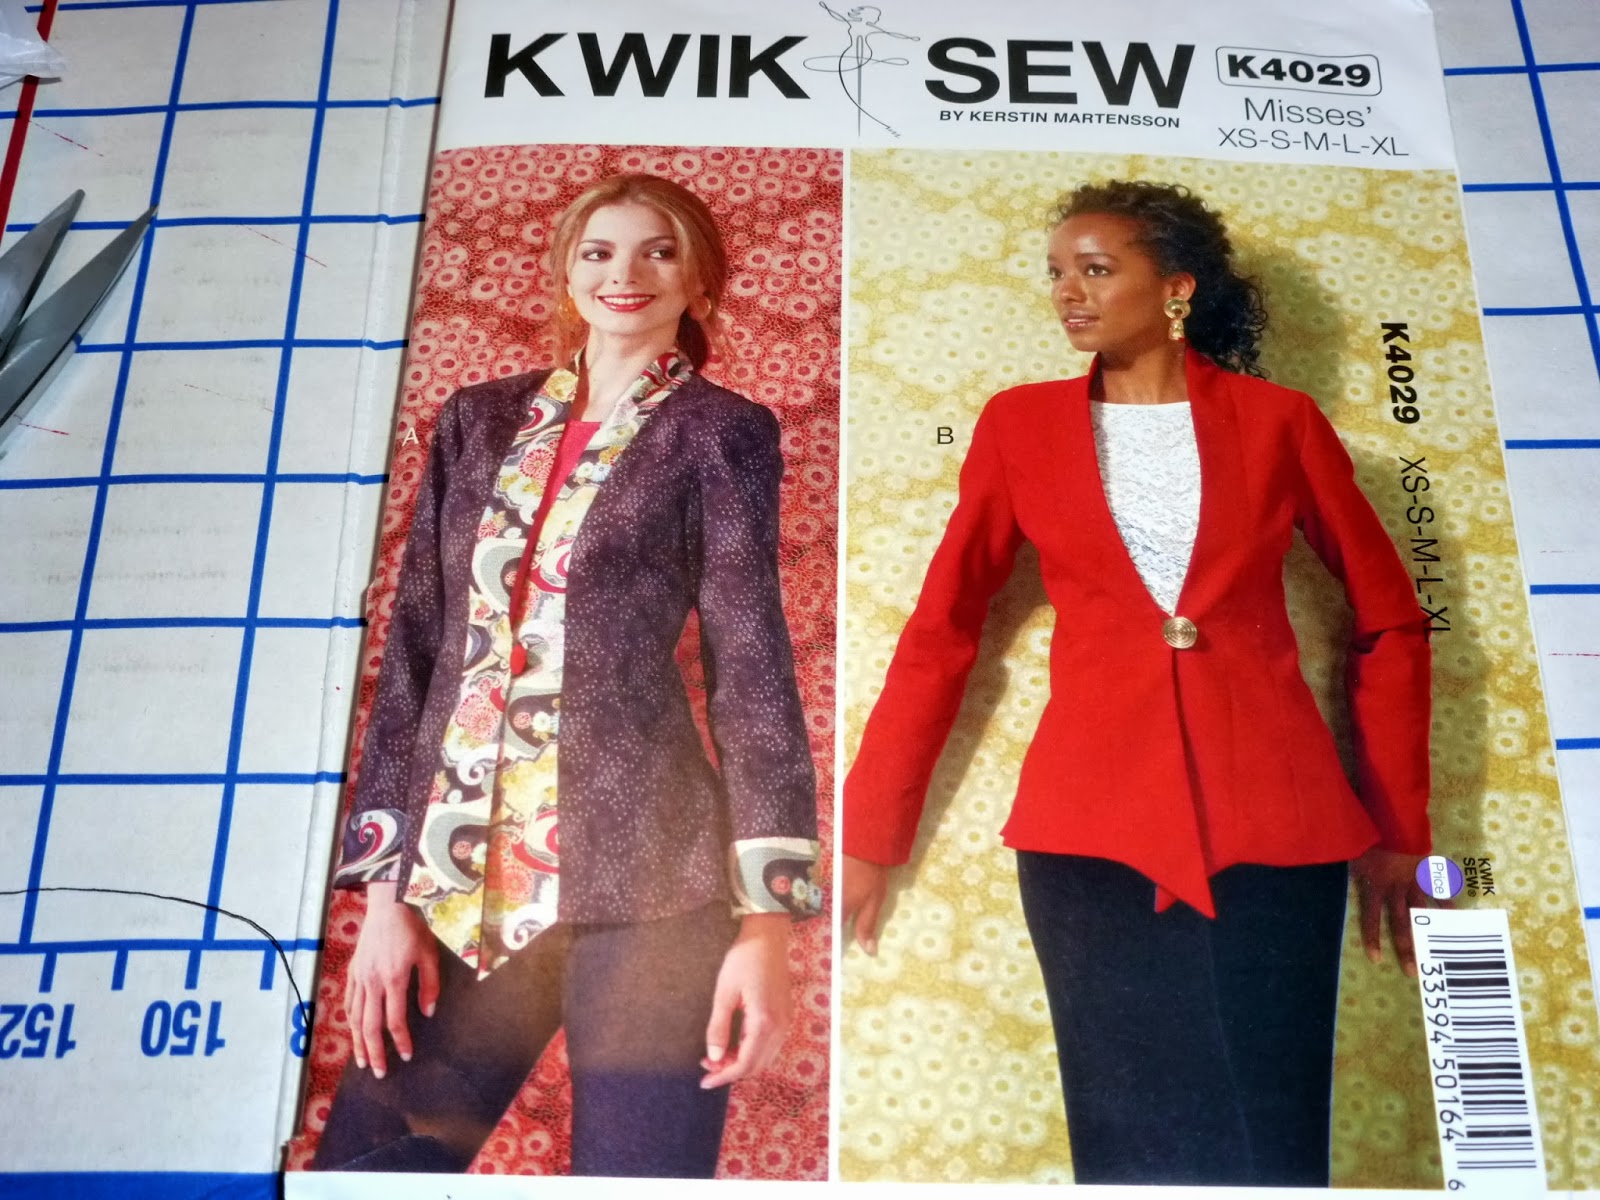 New Kwik Sew patterns